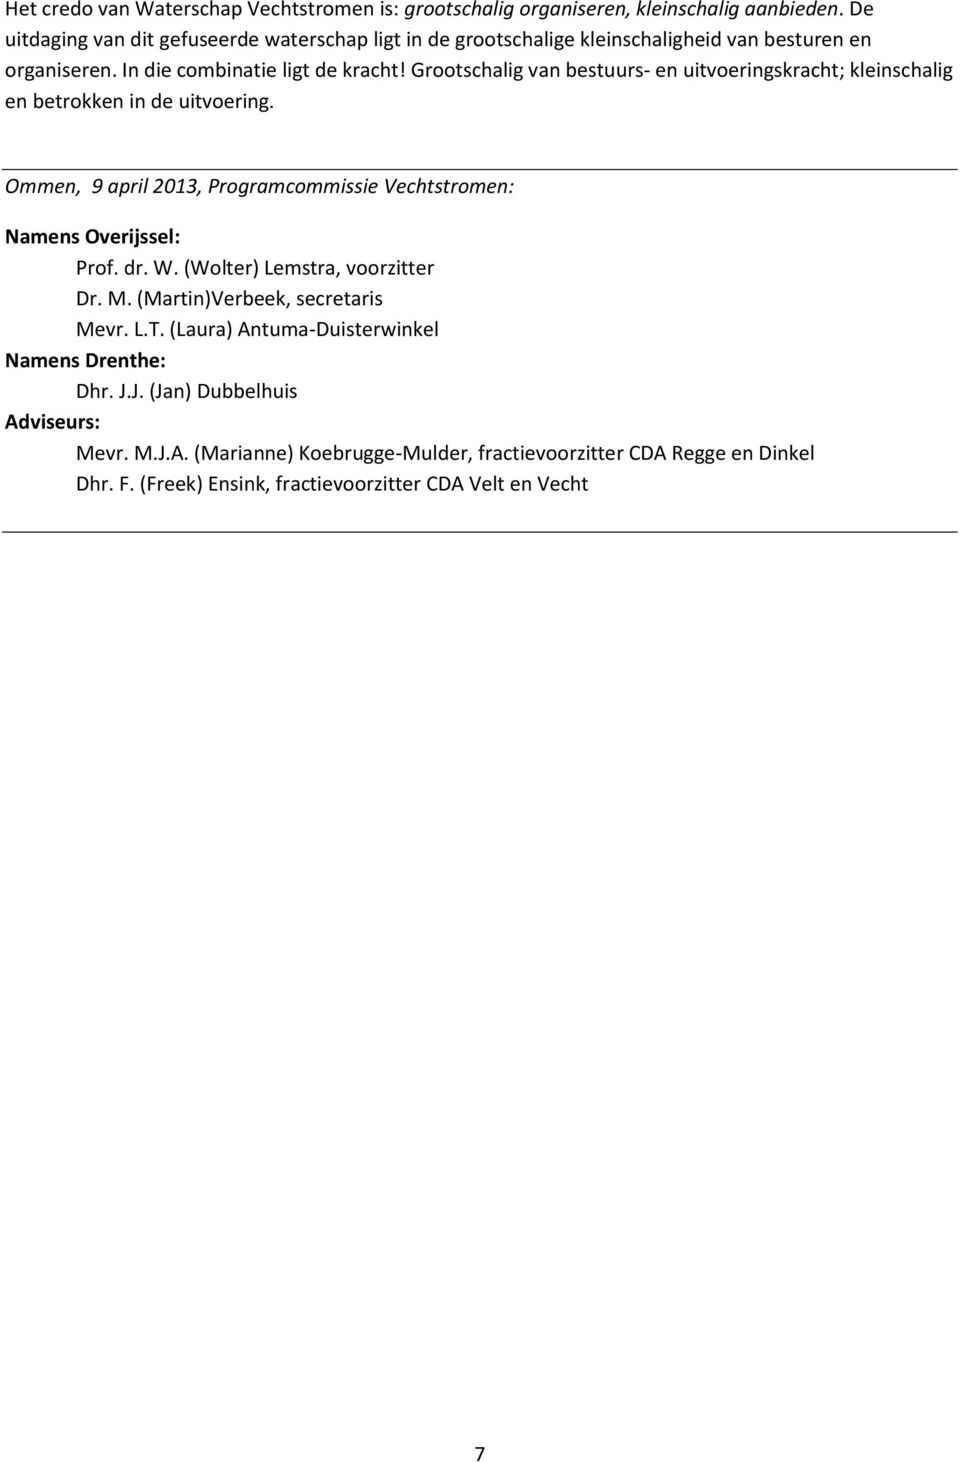 Grootschalig van bestuurs- en uitvoeringskracht; kleinschalig en betrokken in de uitvoering. Ommen, 9 april 2013, Programcommissie Vechtstromen: Namens Overijssel: Prof. dr. W.